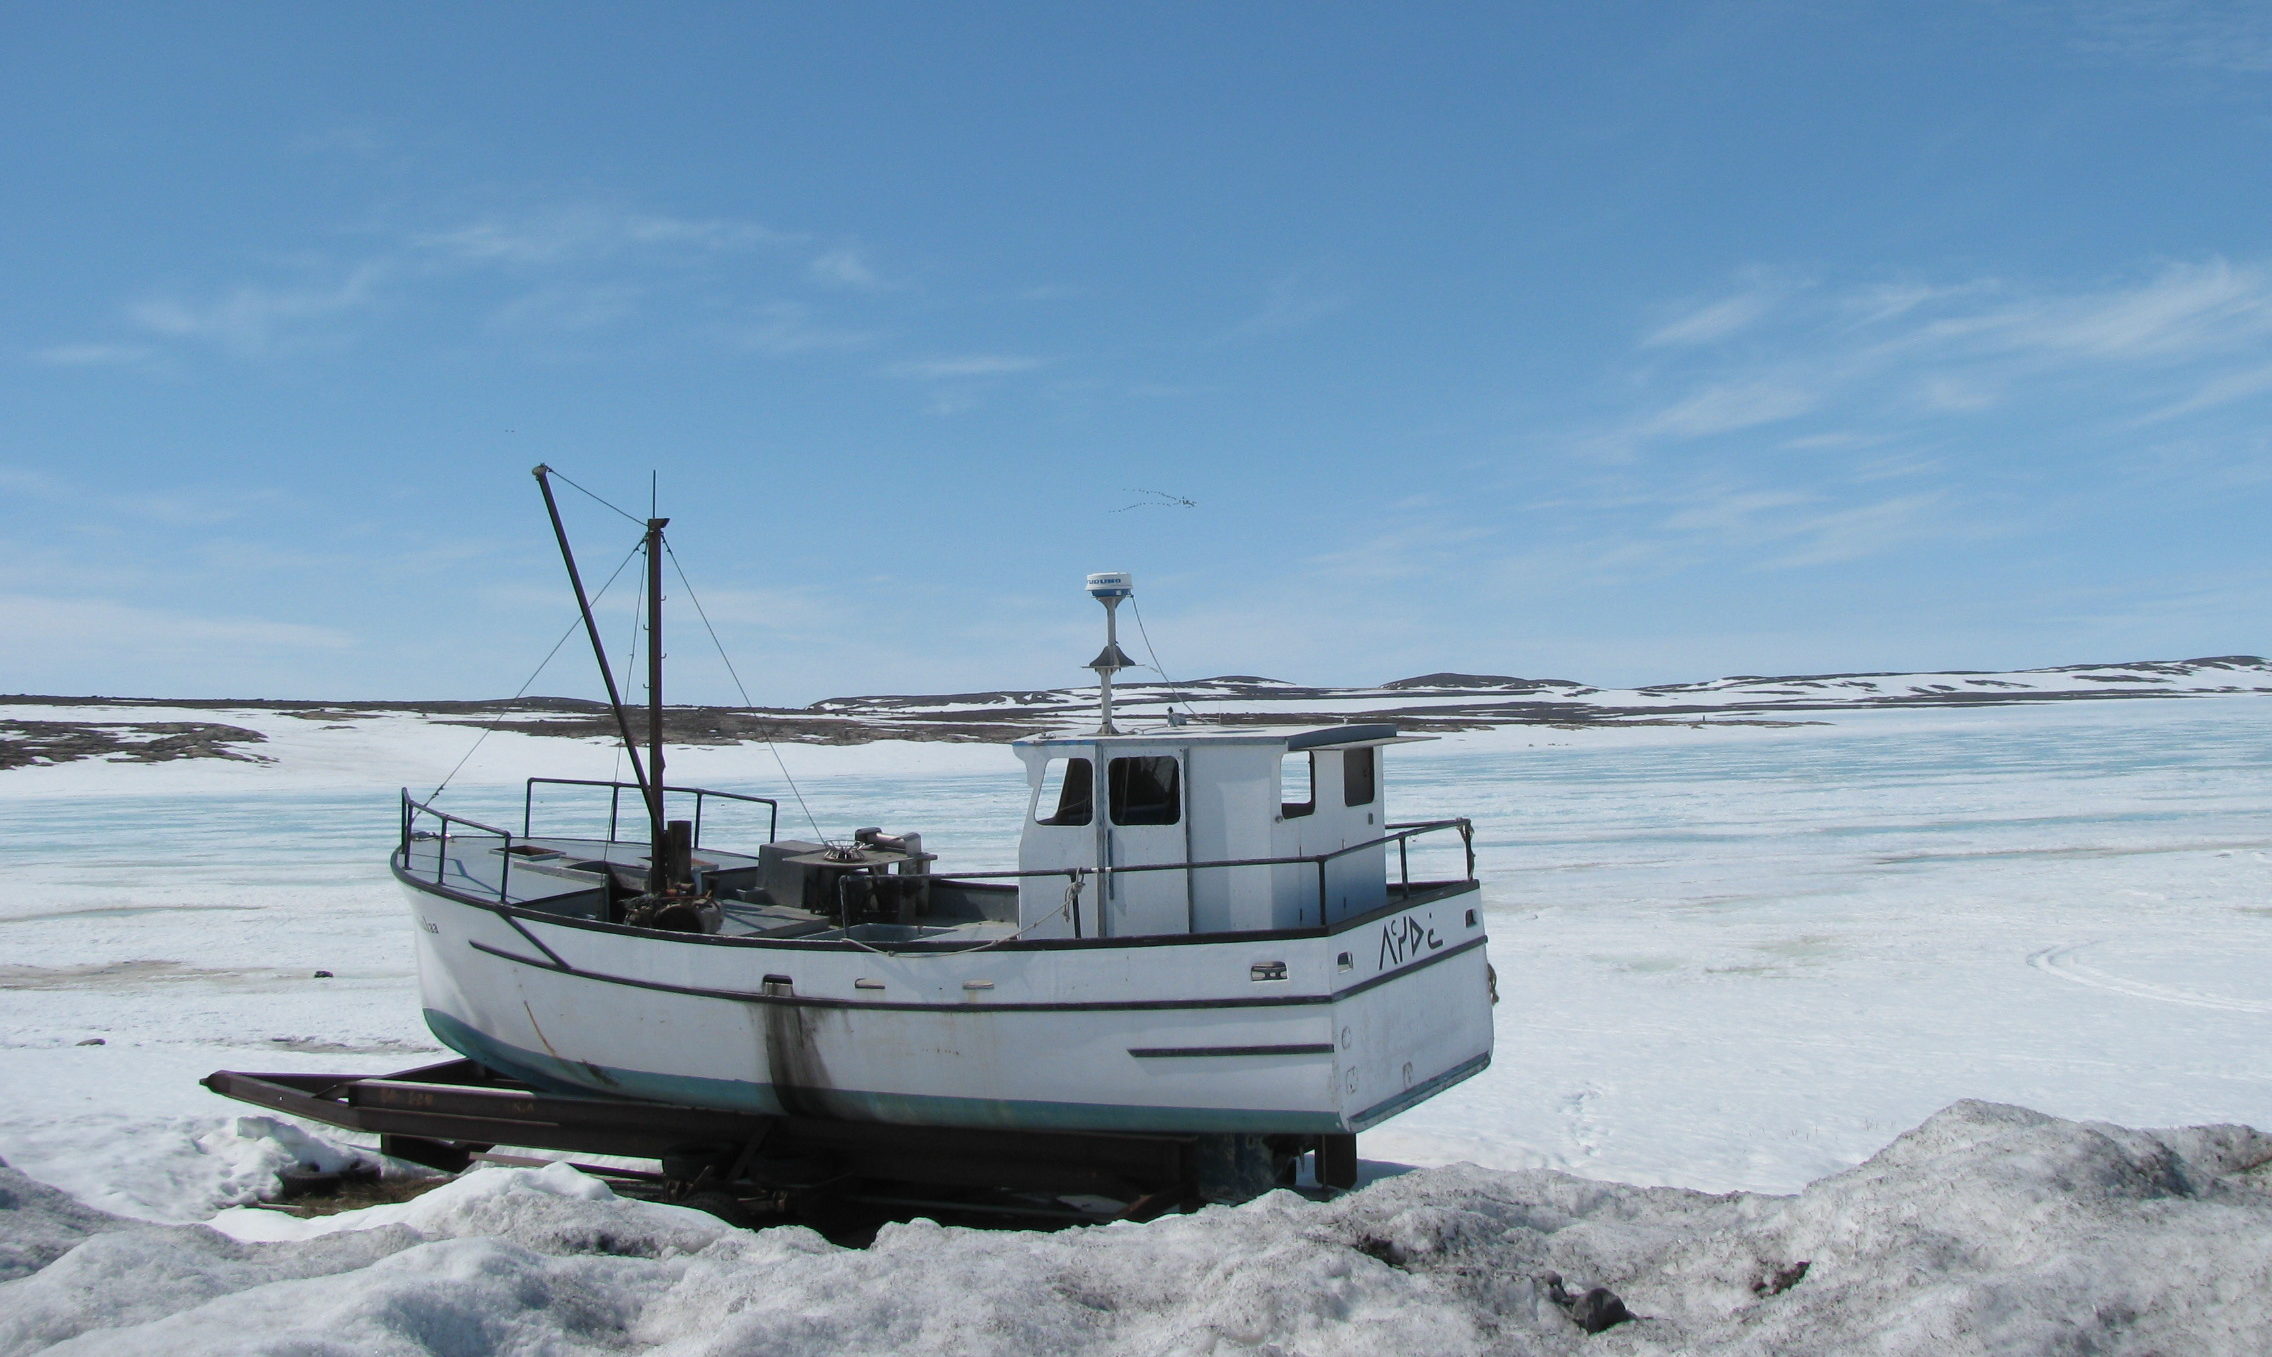 Arctic fishing boat